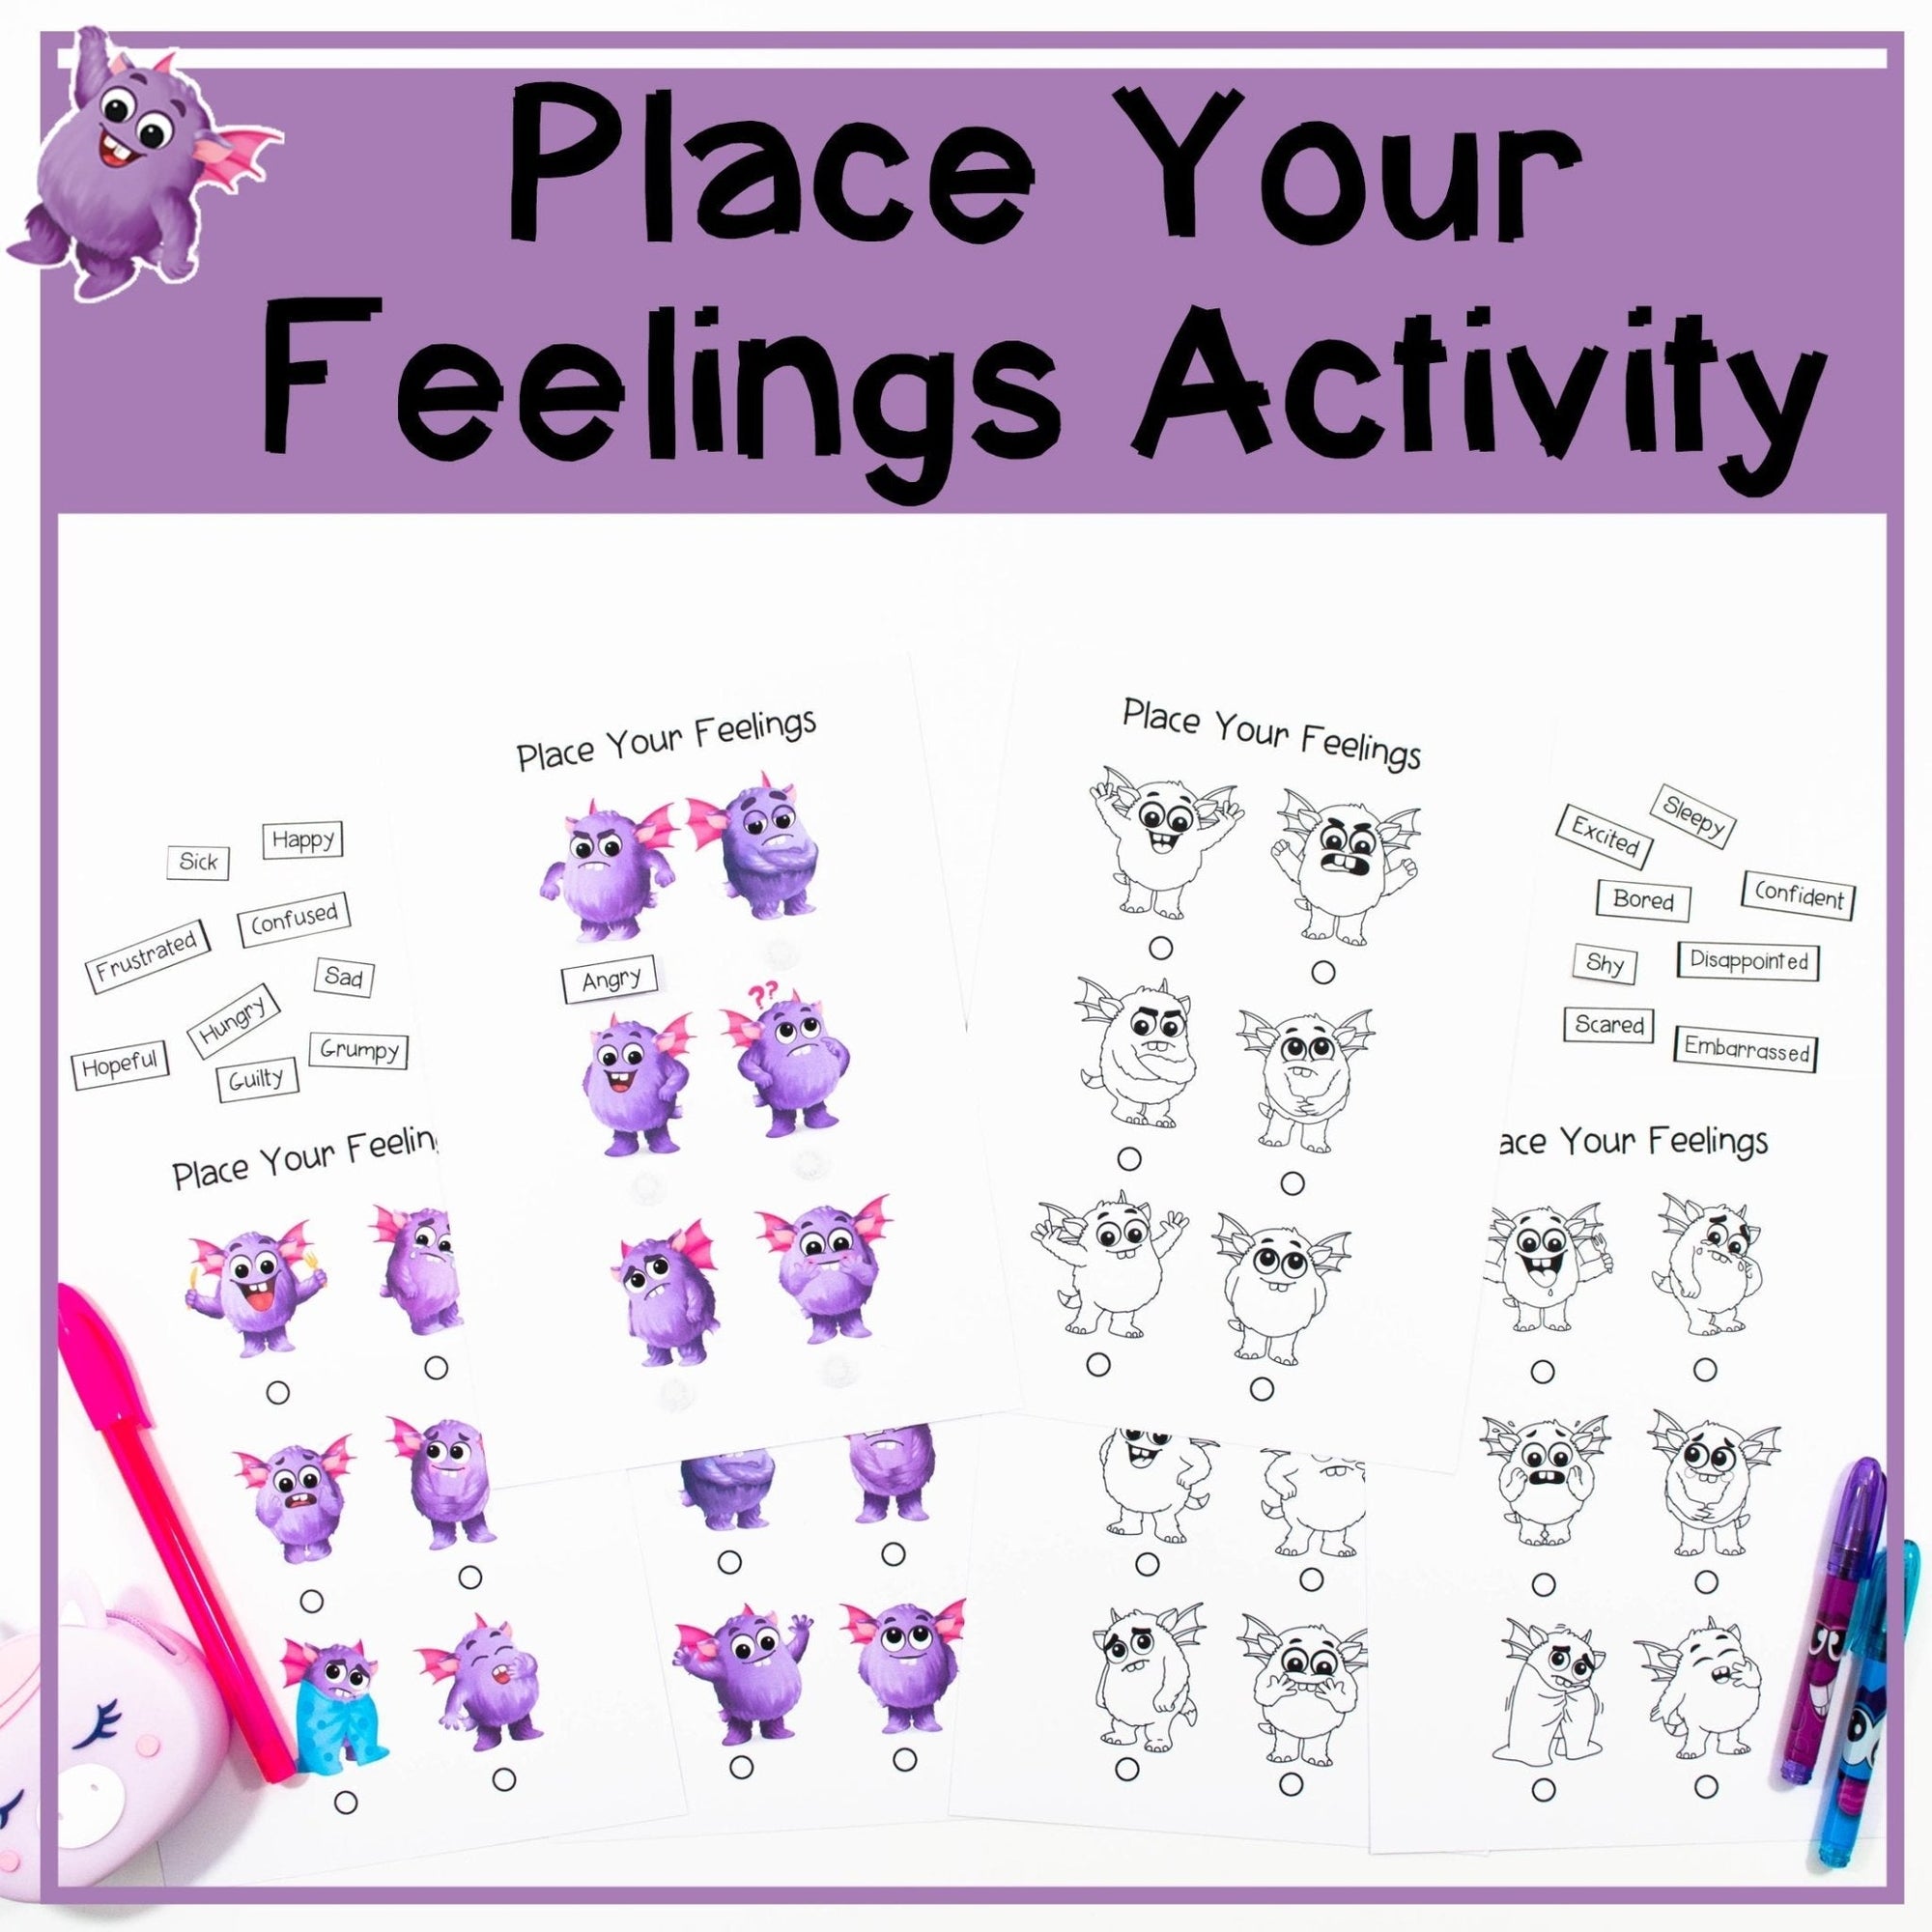 Place Your Feelings Activity - Your Teacher's Pet Creature